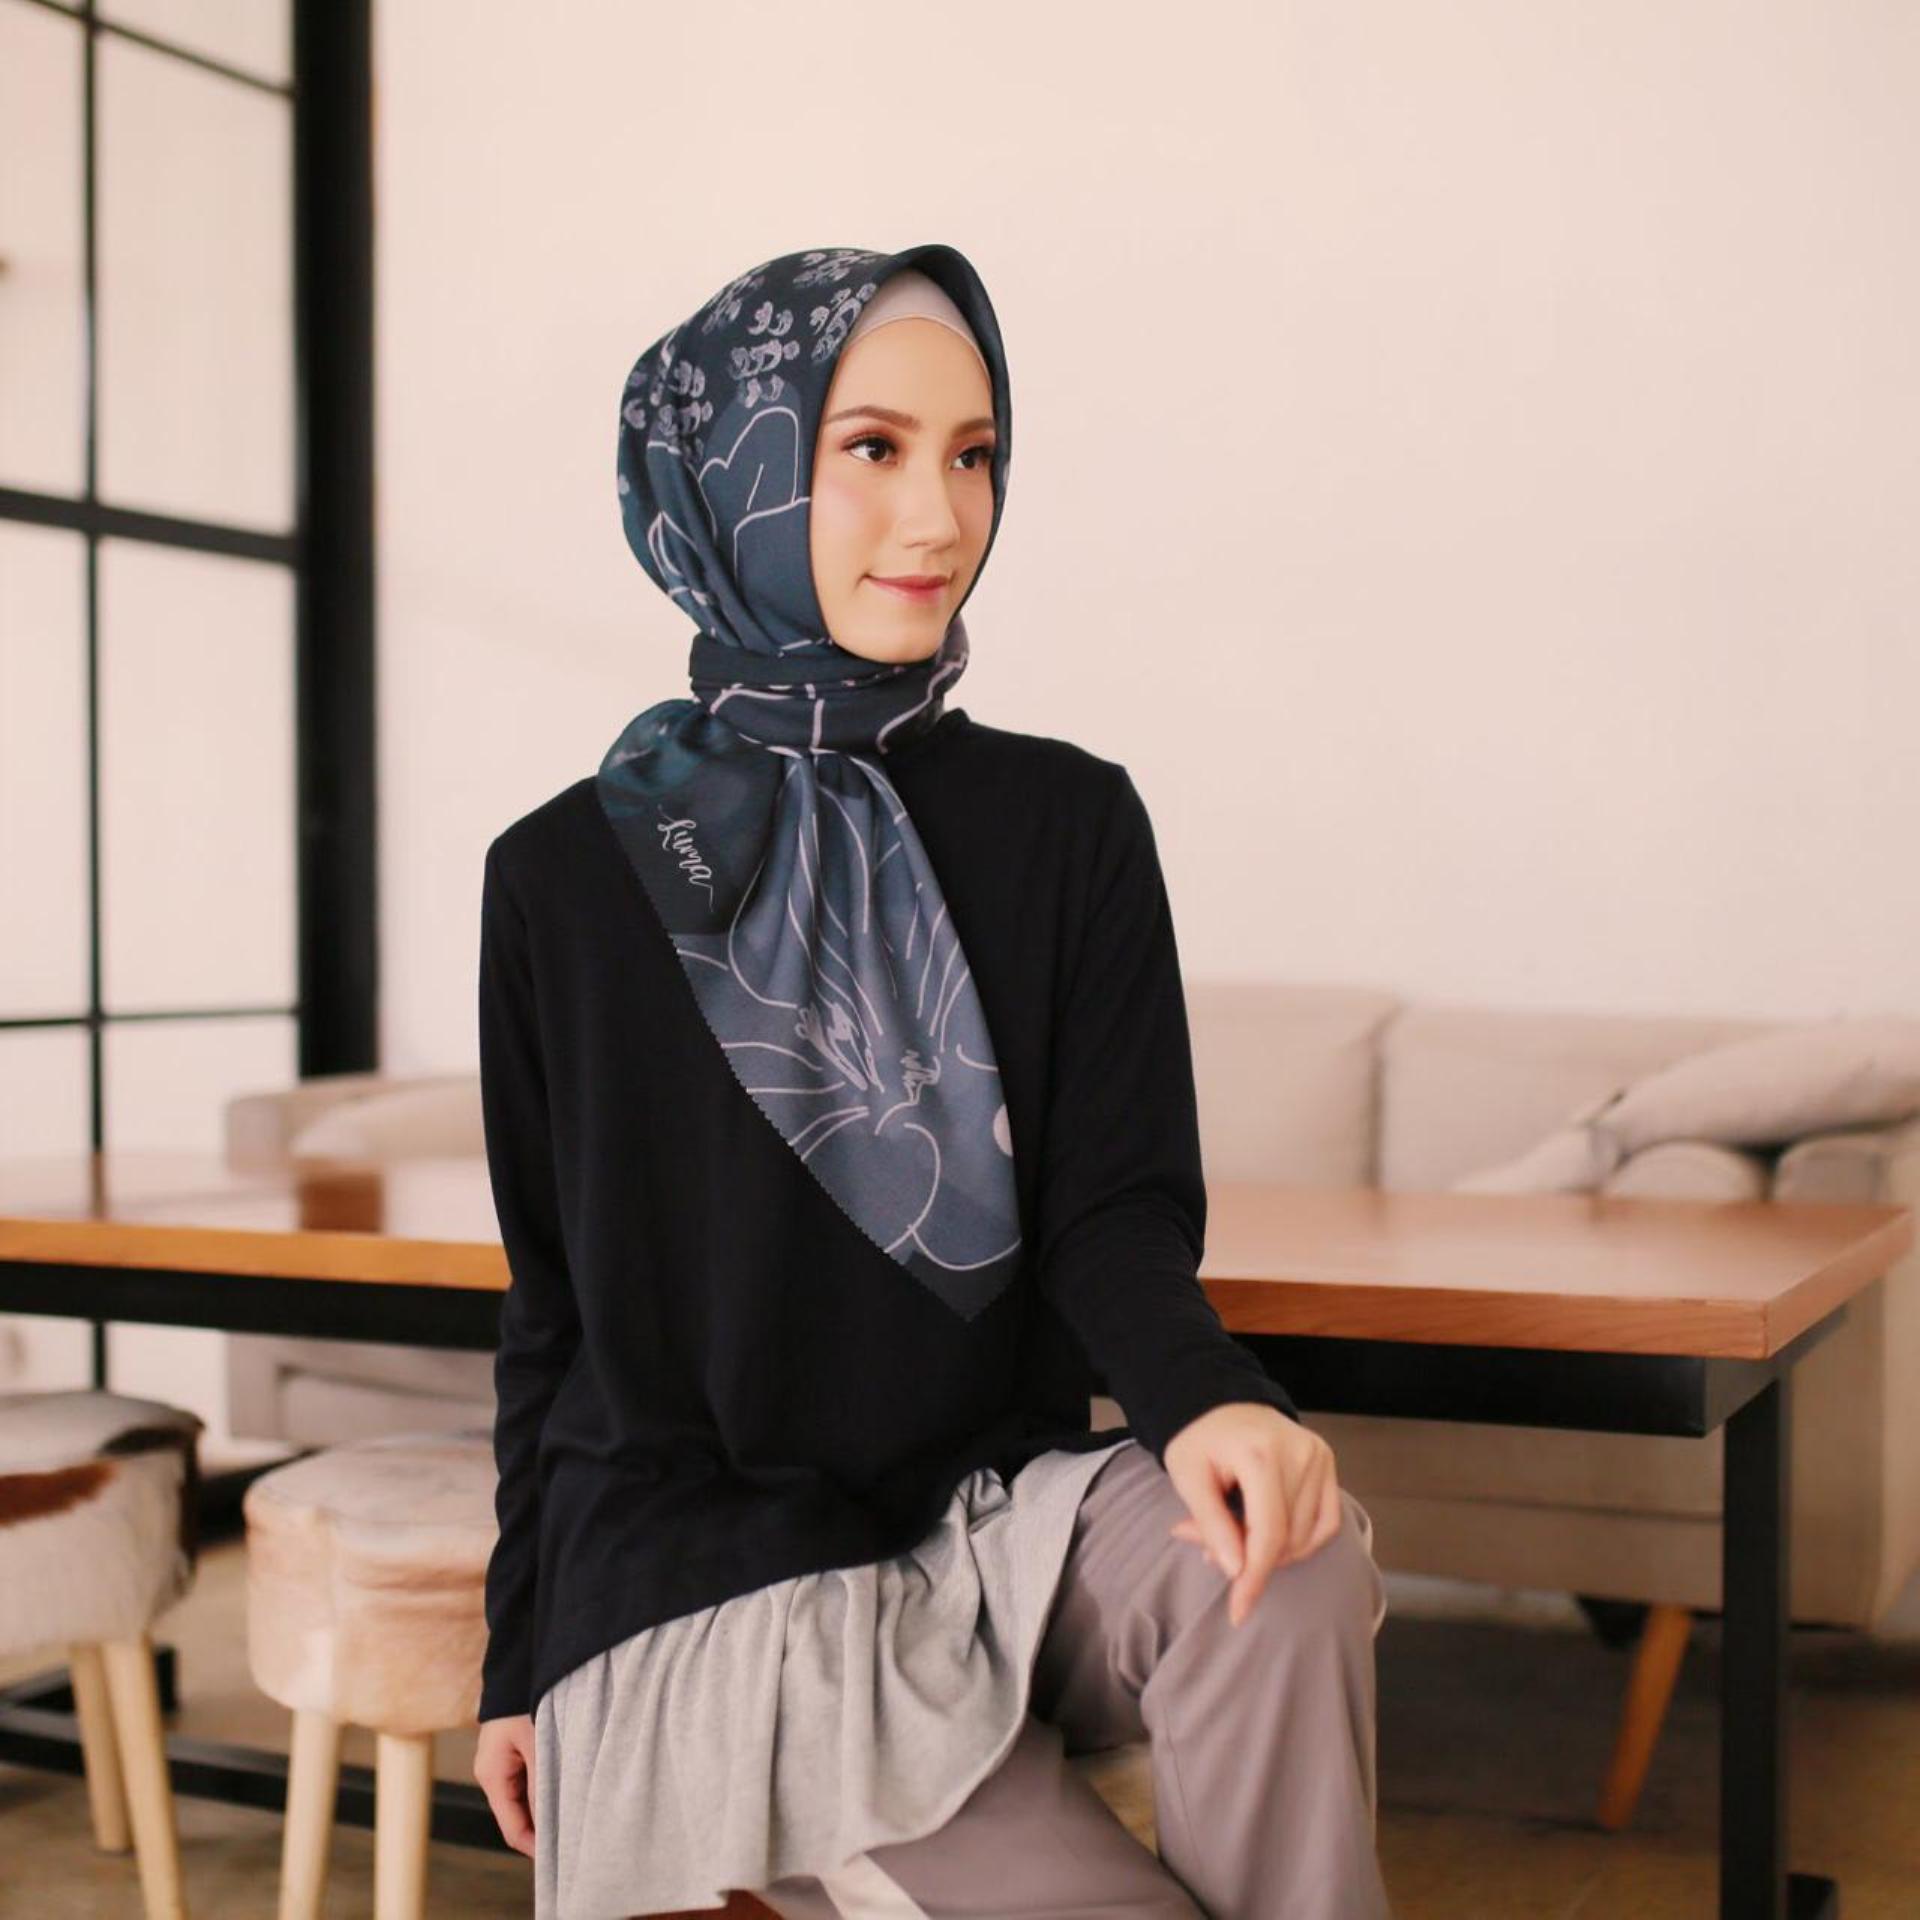 Warna Jilbab Yang Cocok Dengan Pakaian Hitam